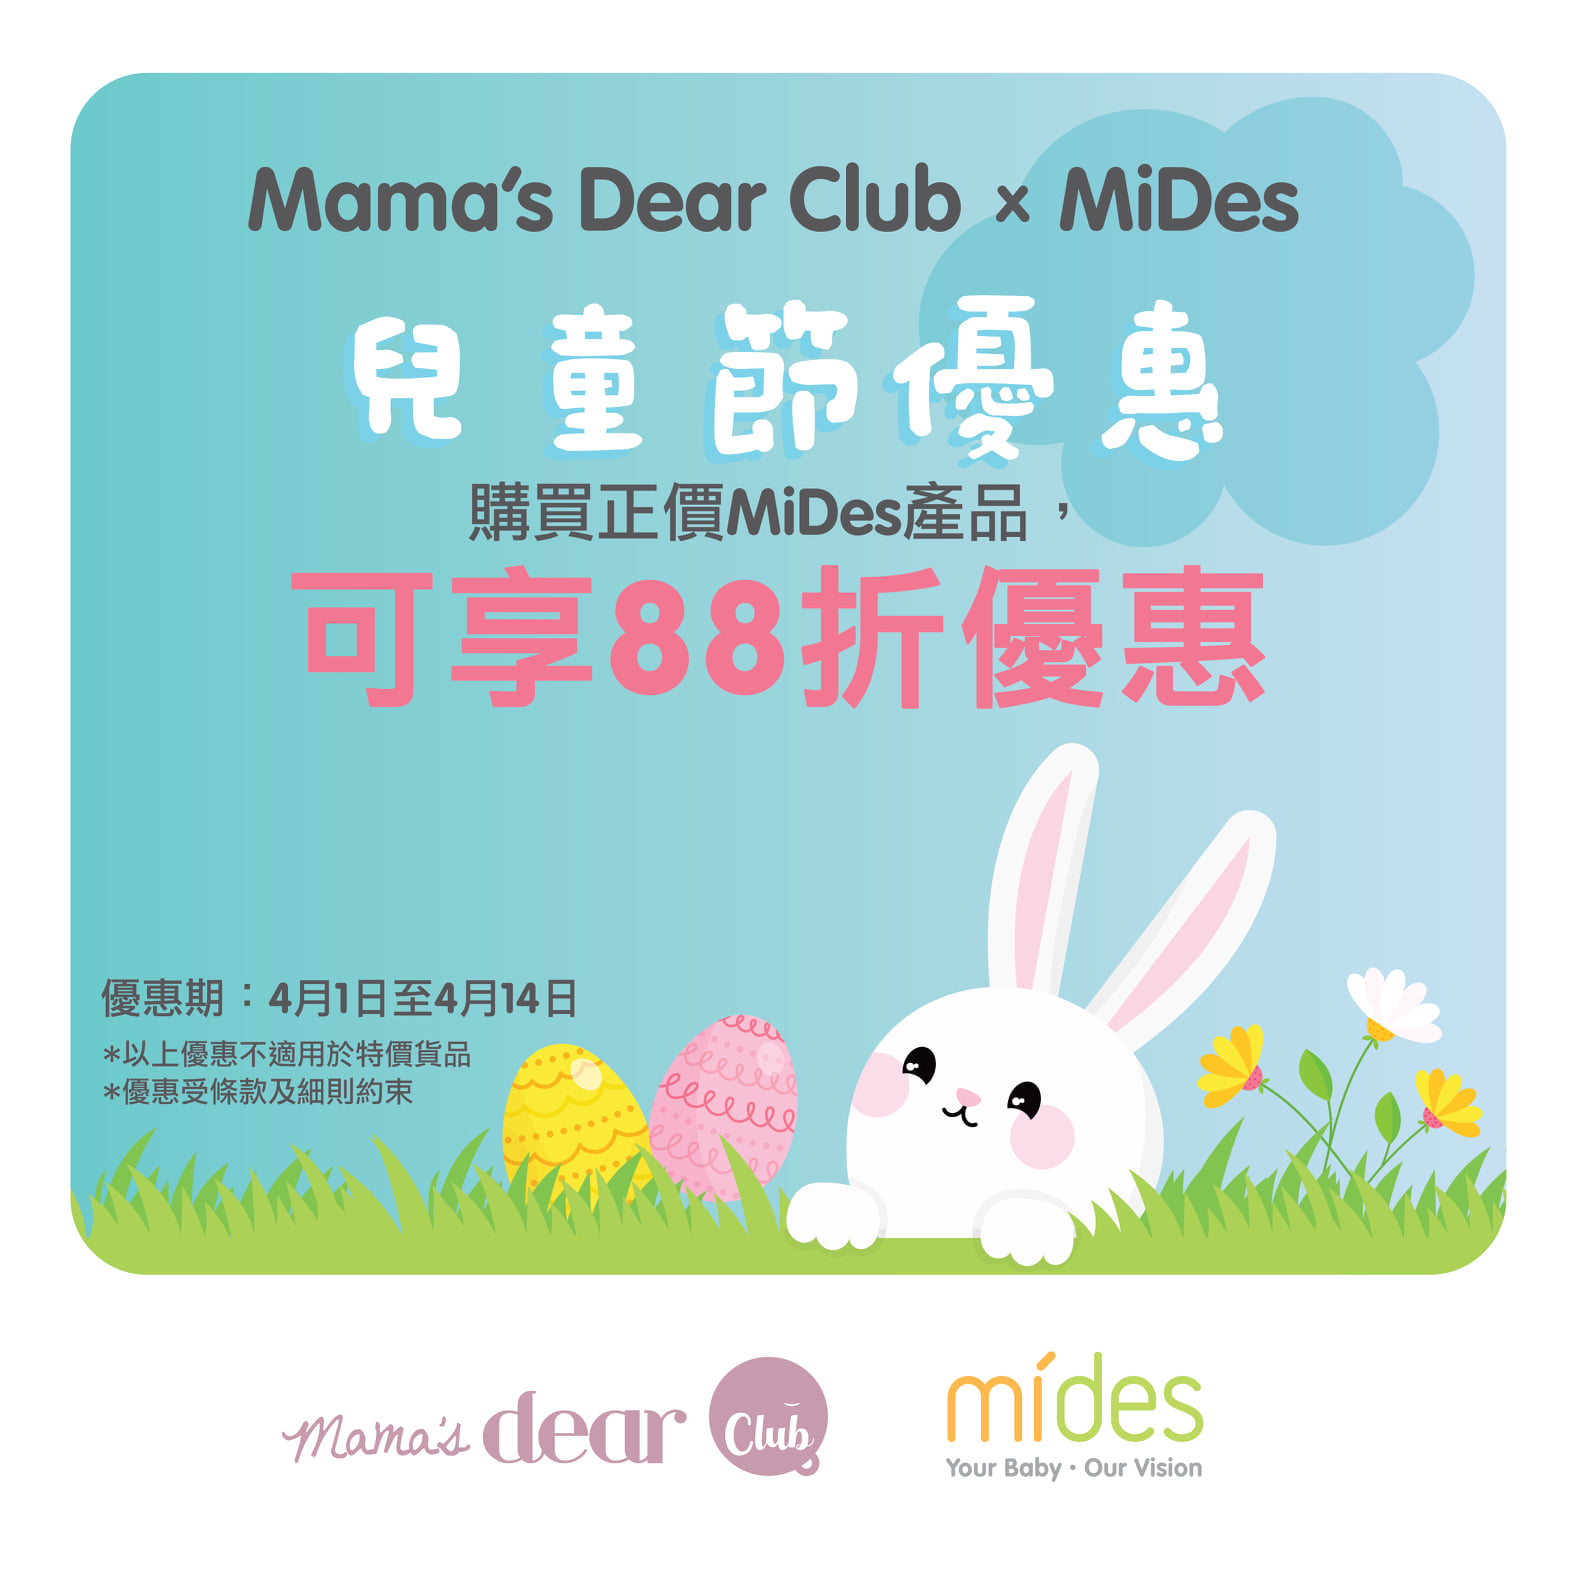 一年一度兒童節就快到啦! 【Mama’s Dear Club】聯乘MiDes為大家送上兒童節購物禮遇👭